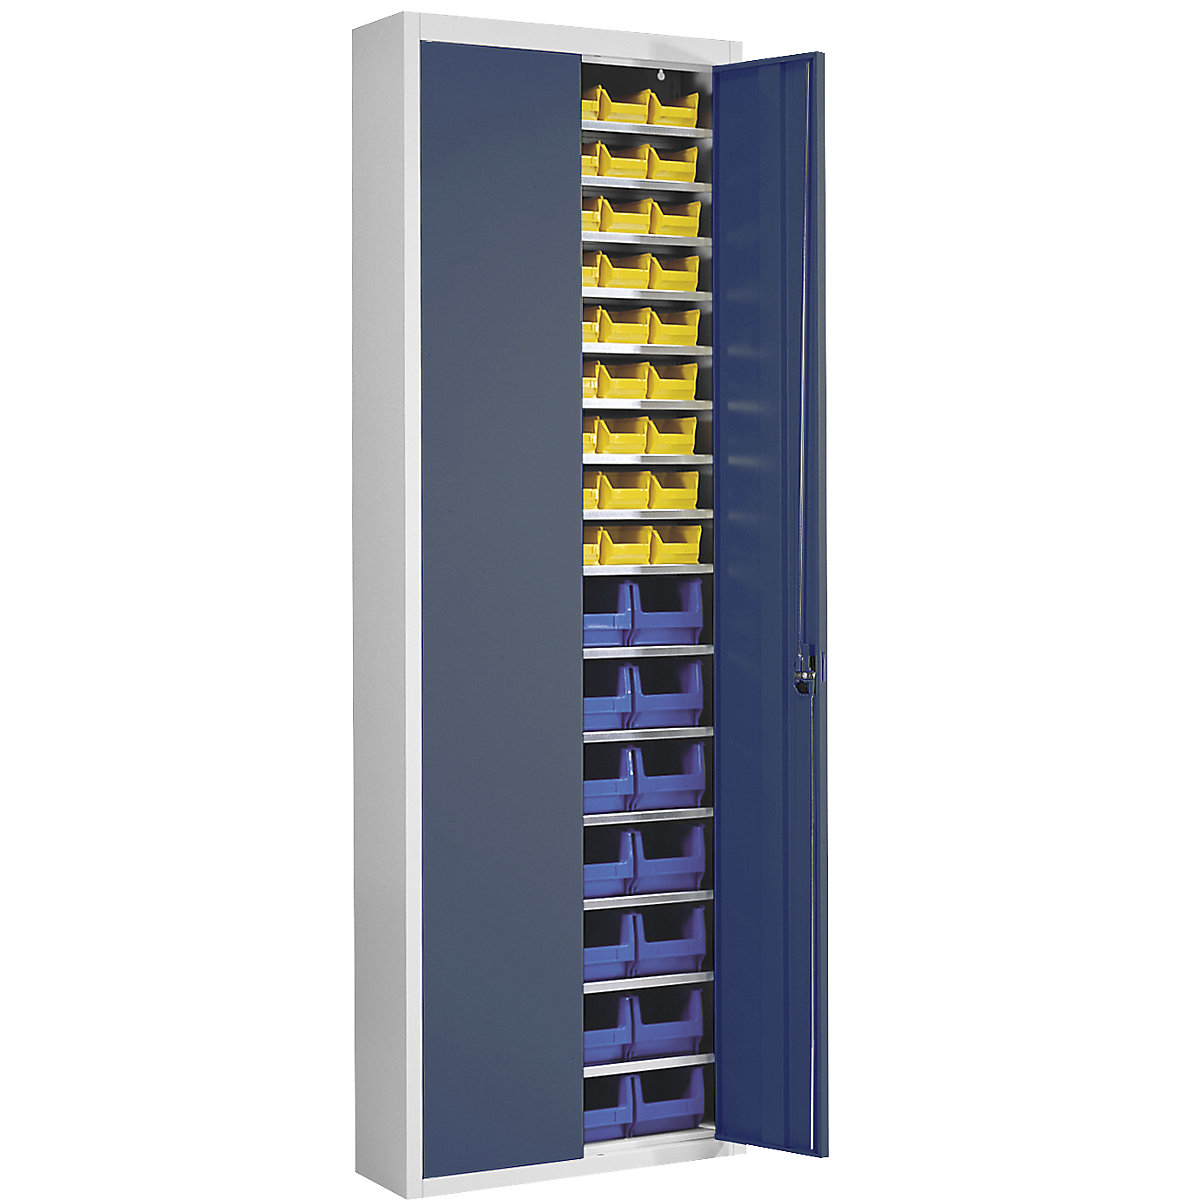 Skladišni ormar s otvorenim skladišnim kutijama – mauser, VxŠxD 2150 x 680 x 280 mm, u dvije boje, korpus u sivoj boji, vrata u plavoj boji, 82 kutije-11